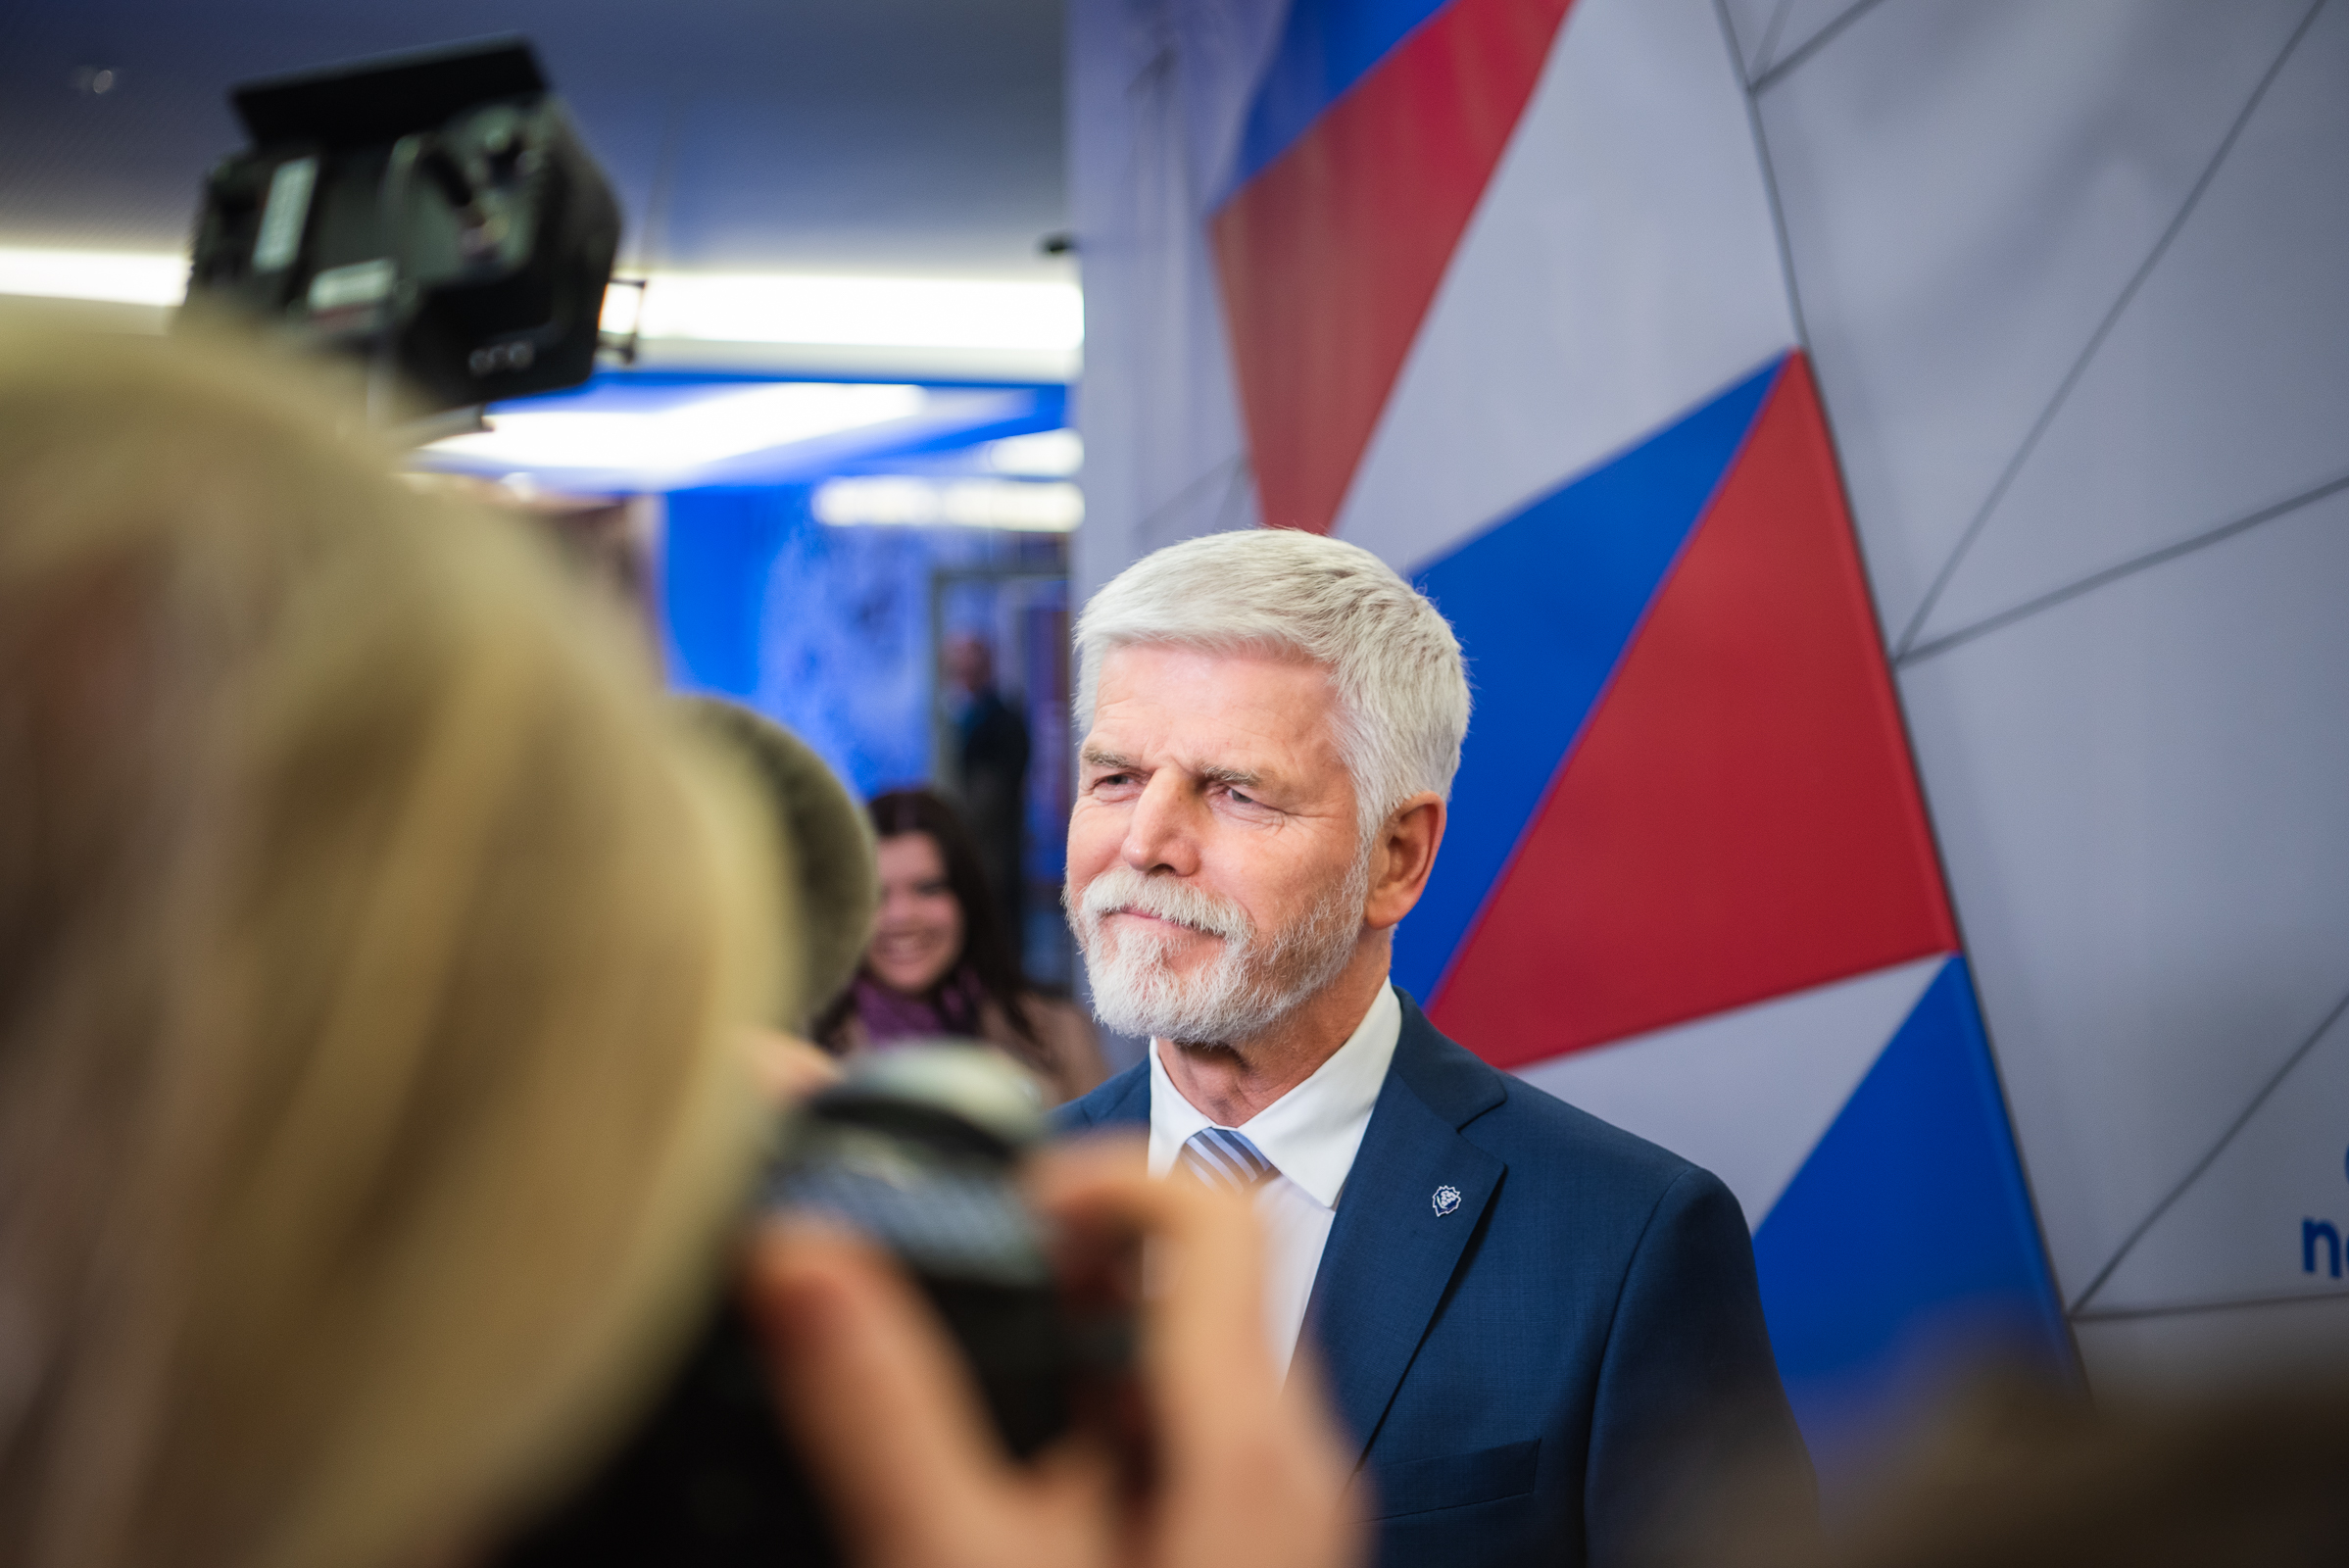 Петро Павел стане новим президентом Чехії / фото twitter.com/general_pavel